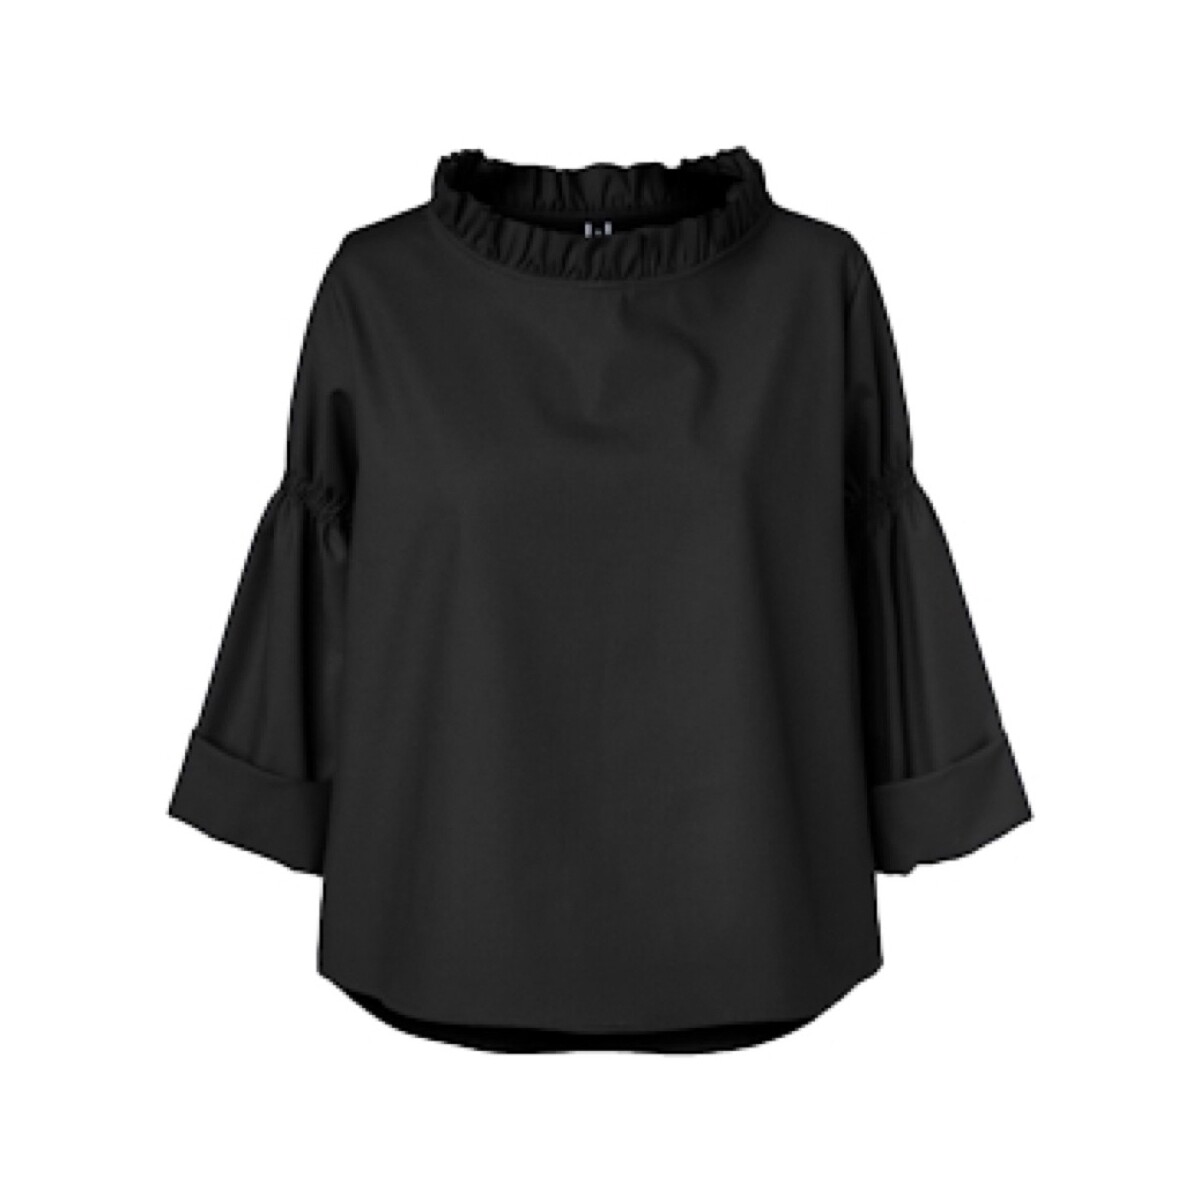 Kleidung Damen Tops / Blusen Wendy Trendy Top 221640 - Black Schwarz